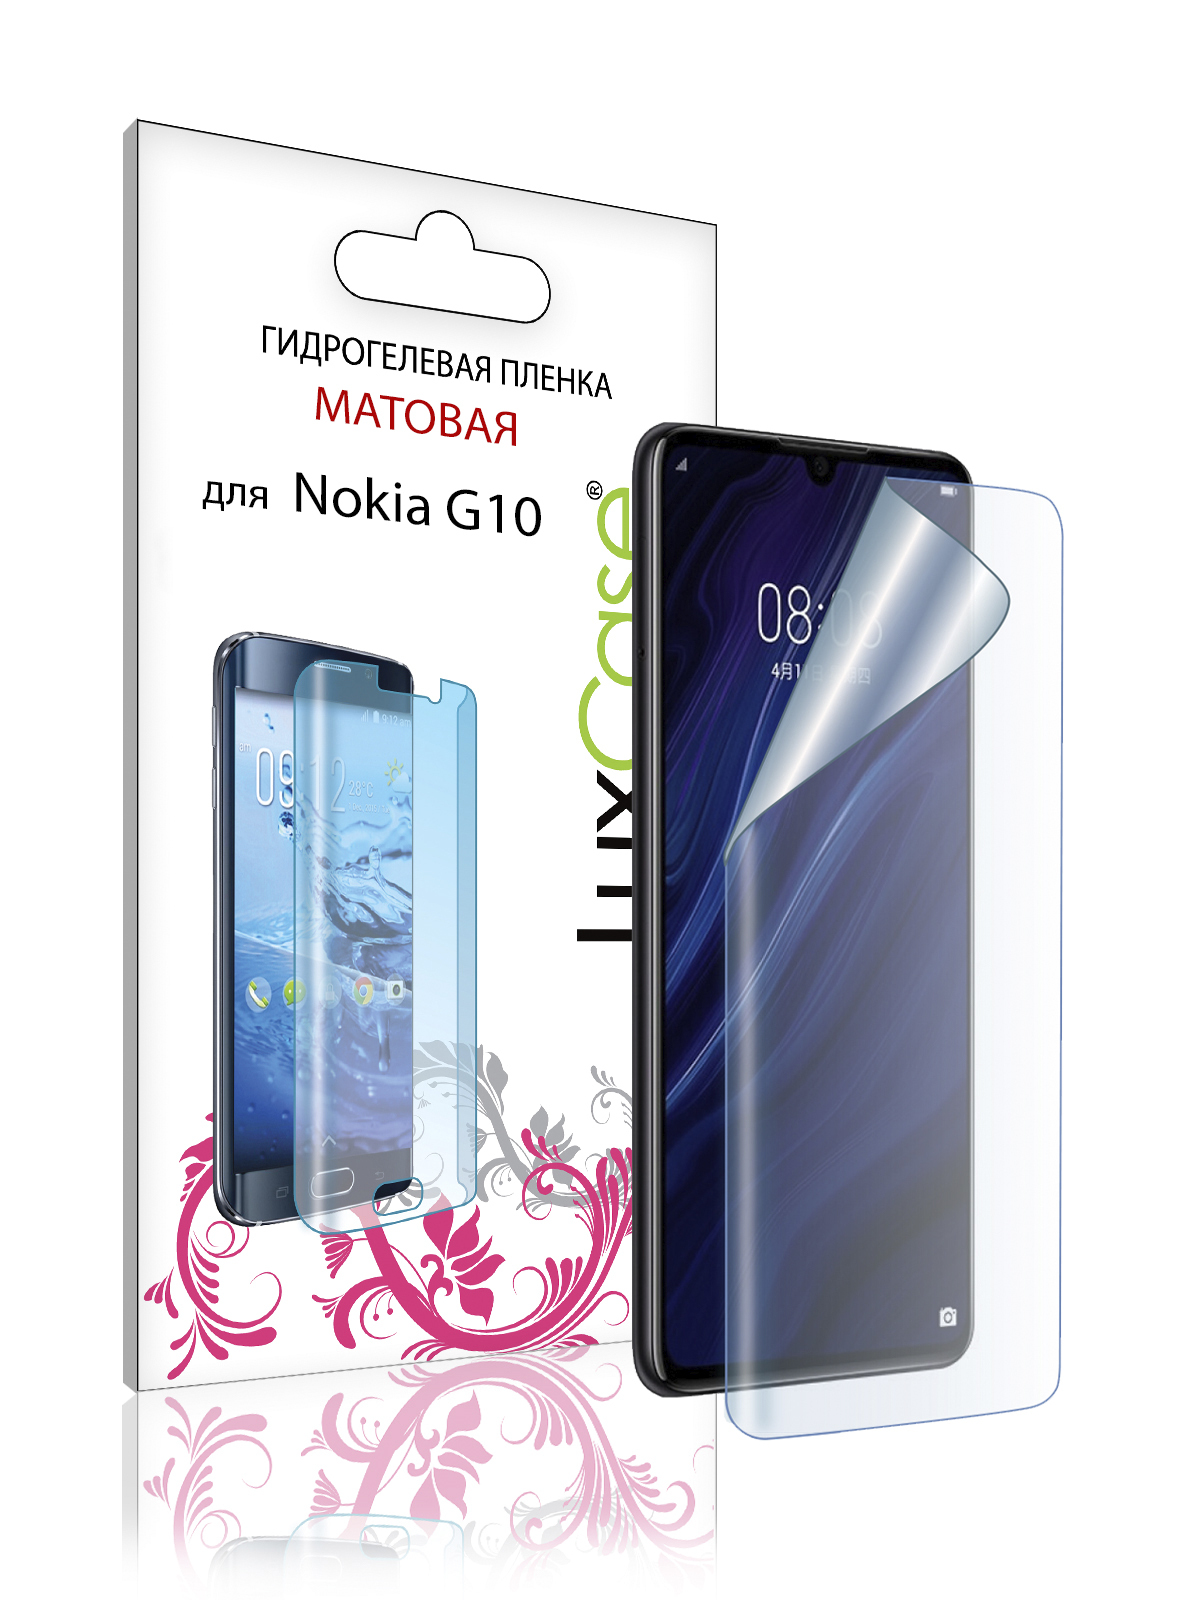 Пленка гидрогелевая LuxCase для Nokia G10 0.14mm Front Matte 86453 гидрогелевая пленка luxcase для nokia g10 0 14mm front matte 86453